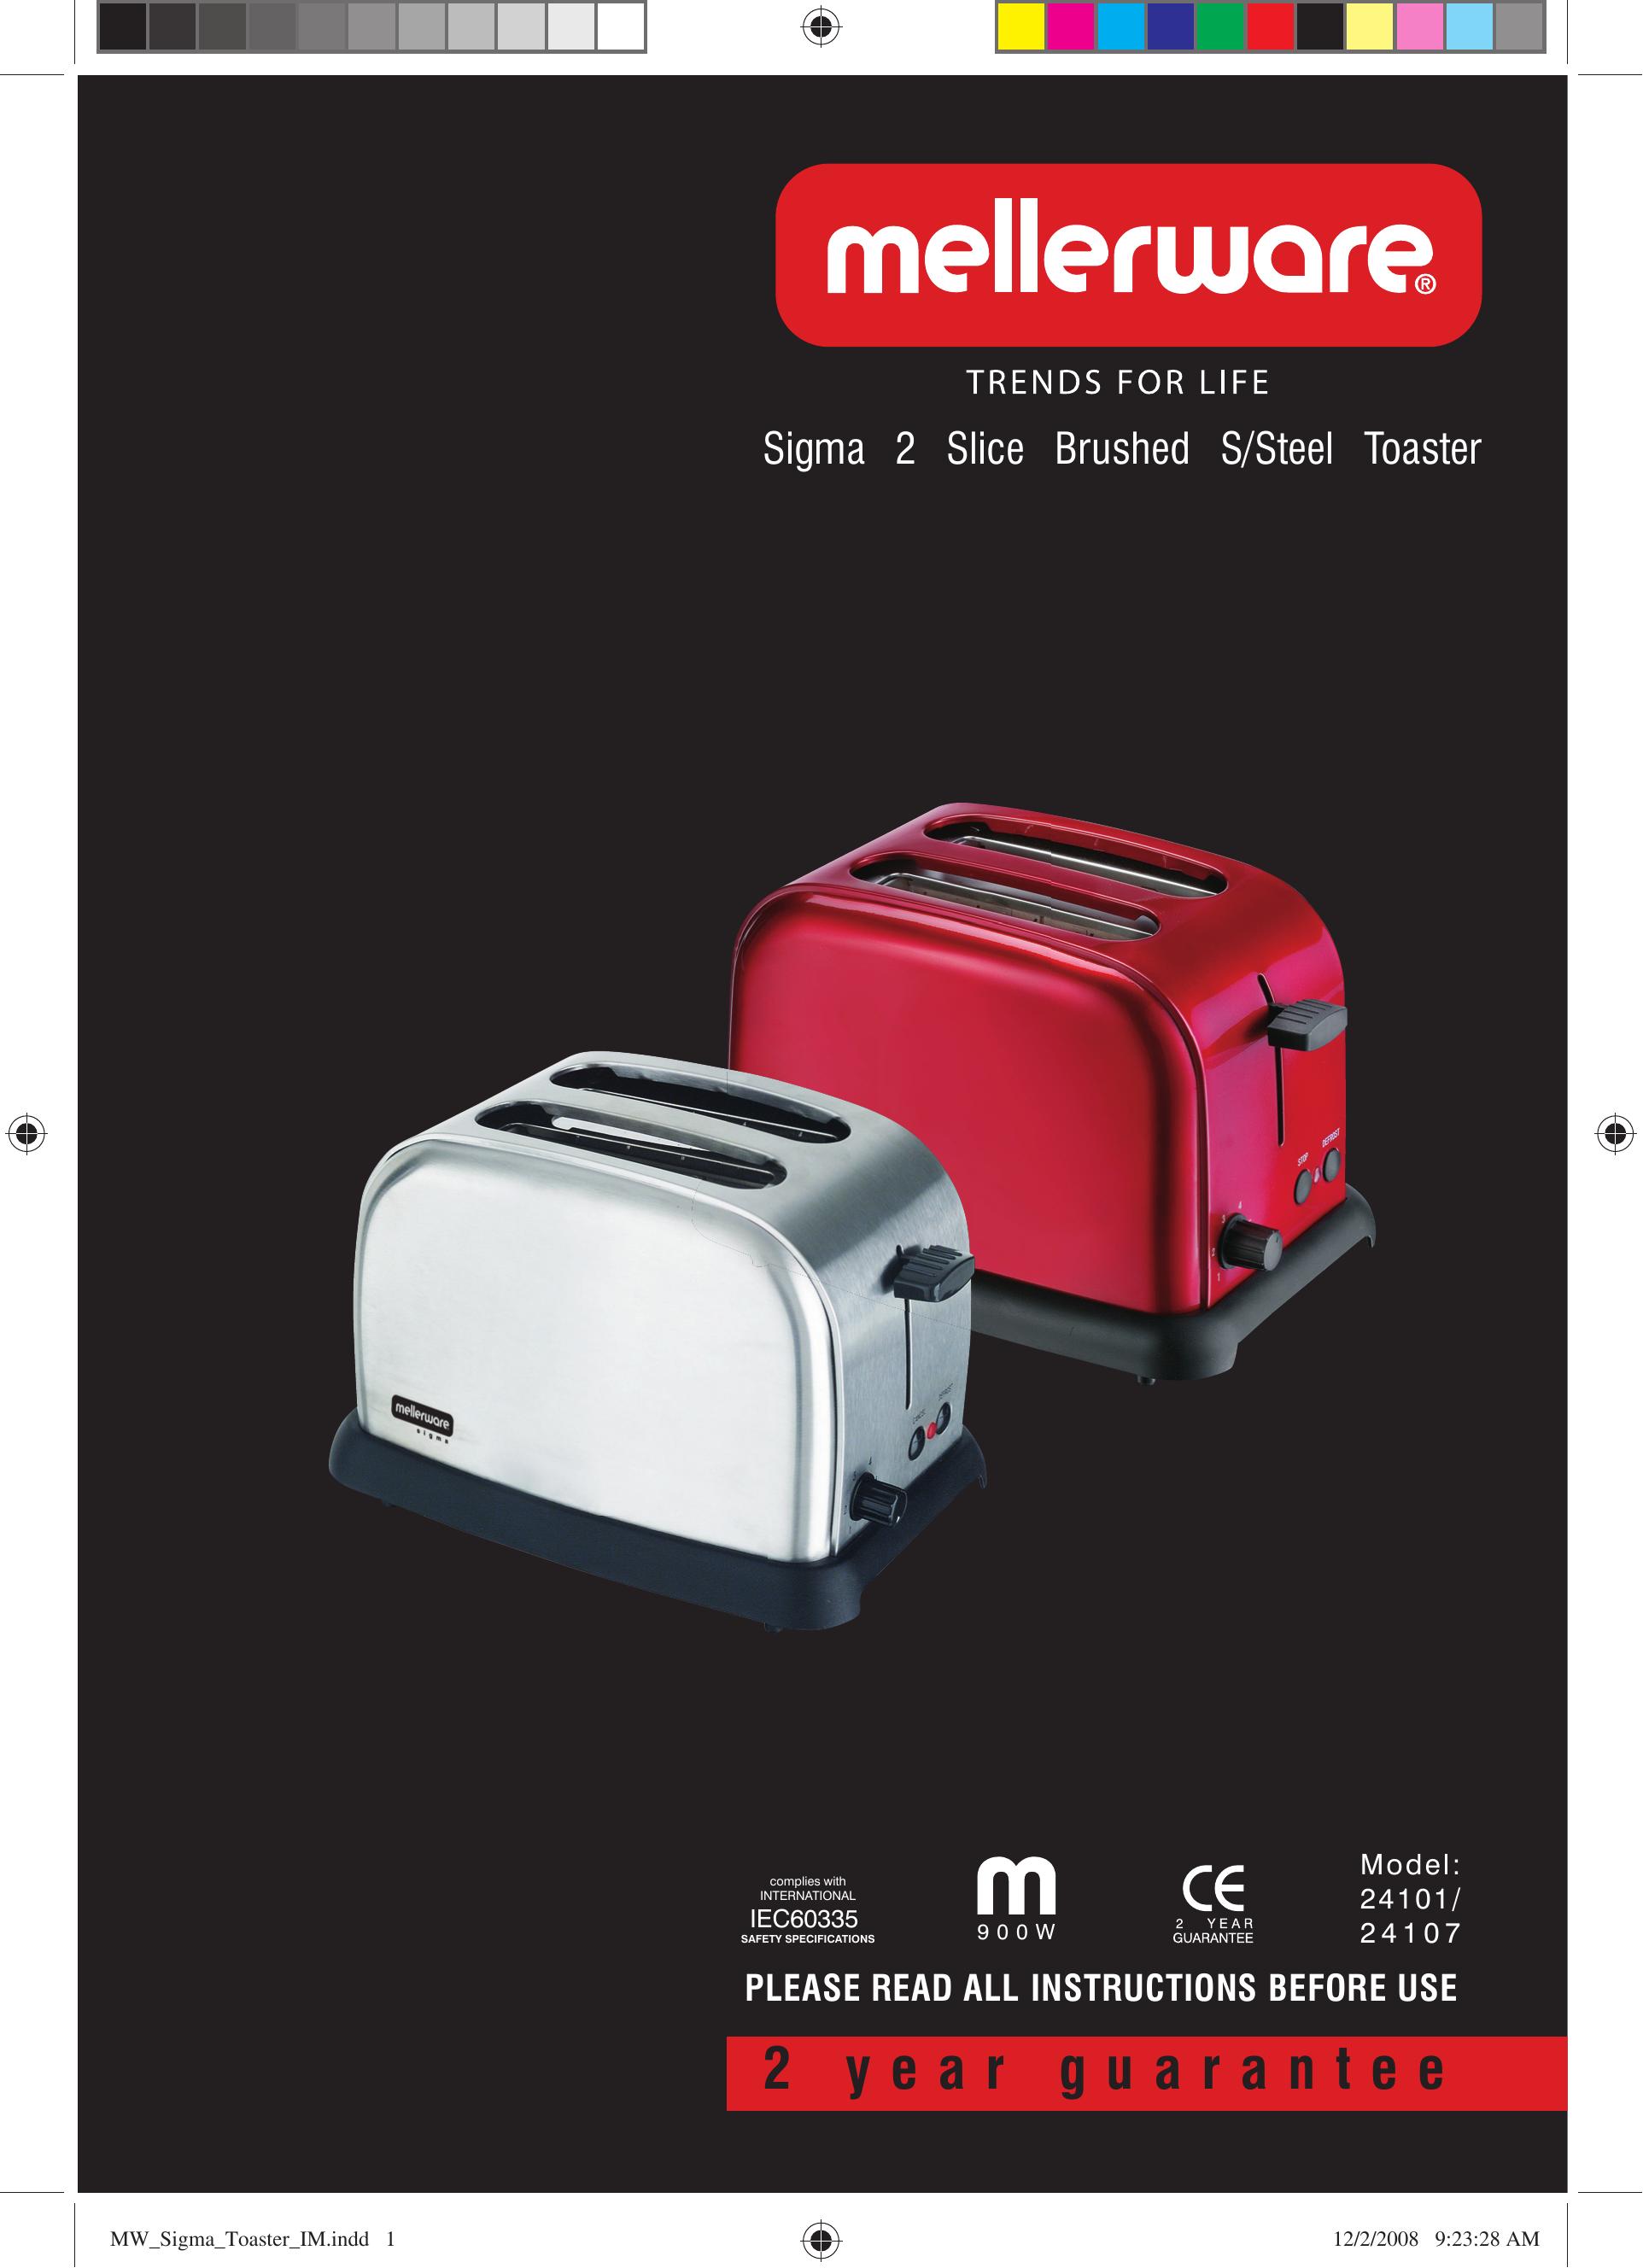 Mellerware 24107 Toaster User Manual